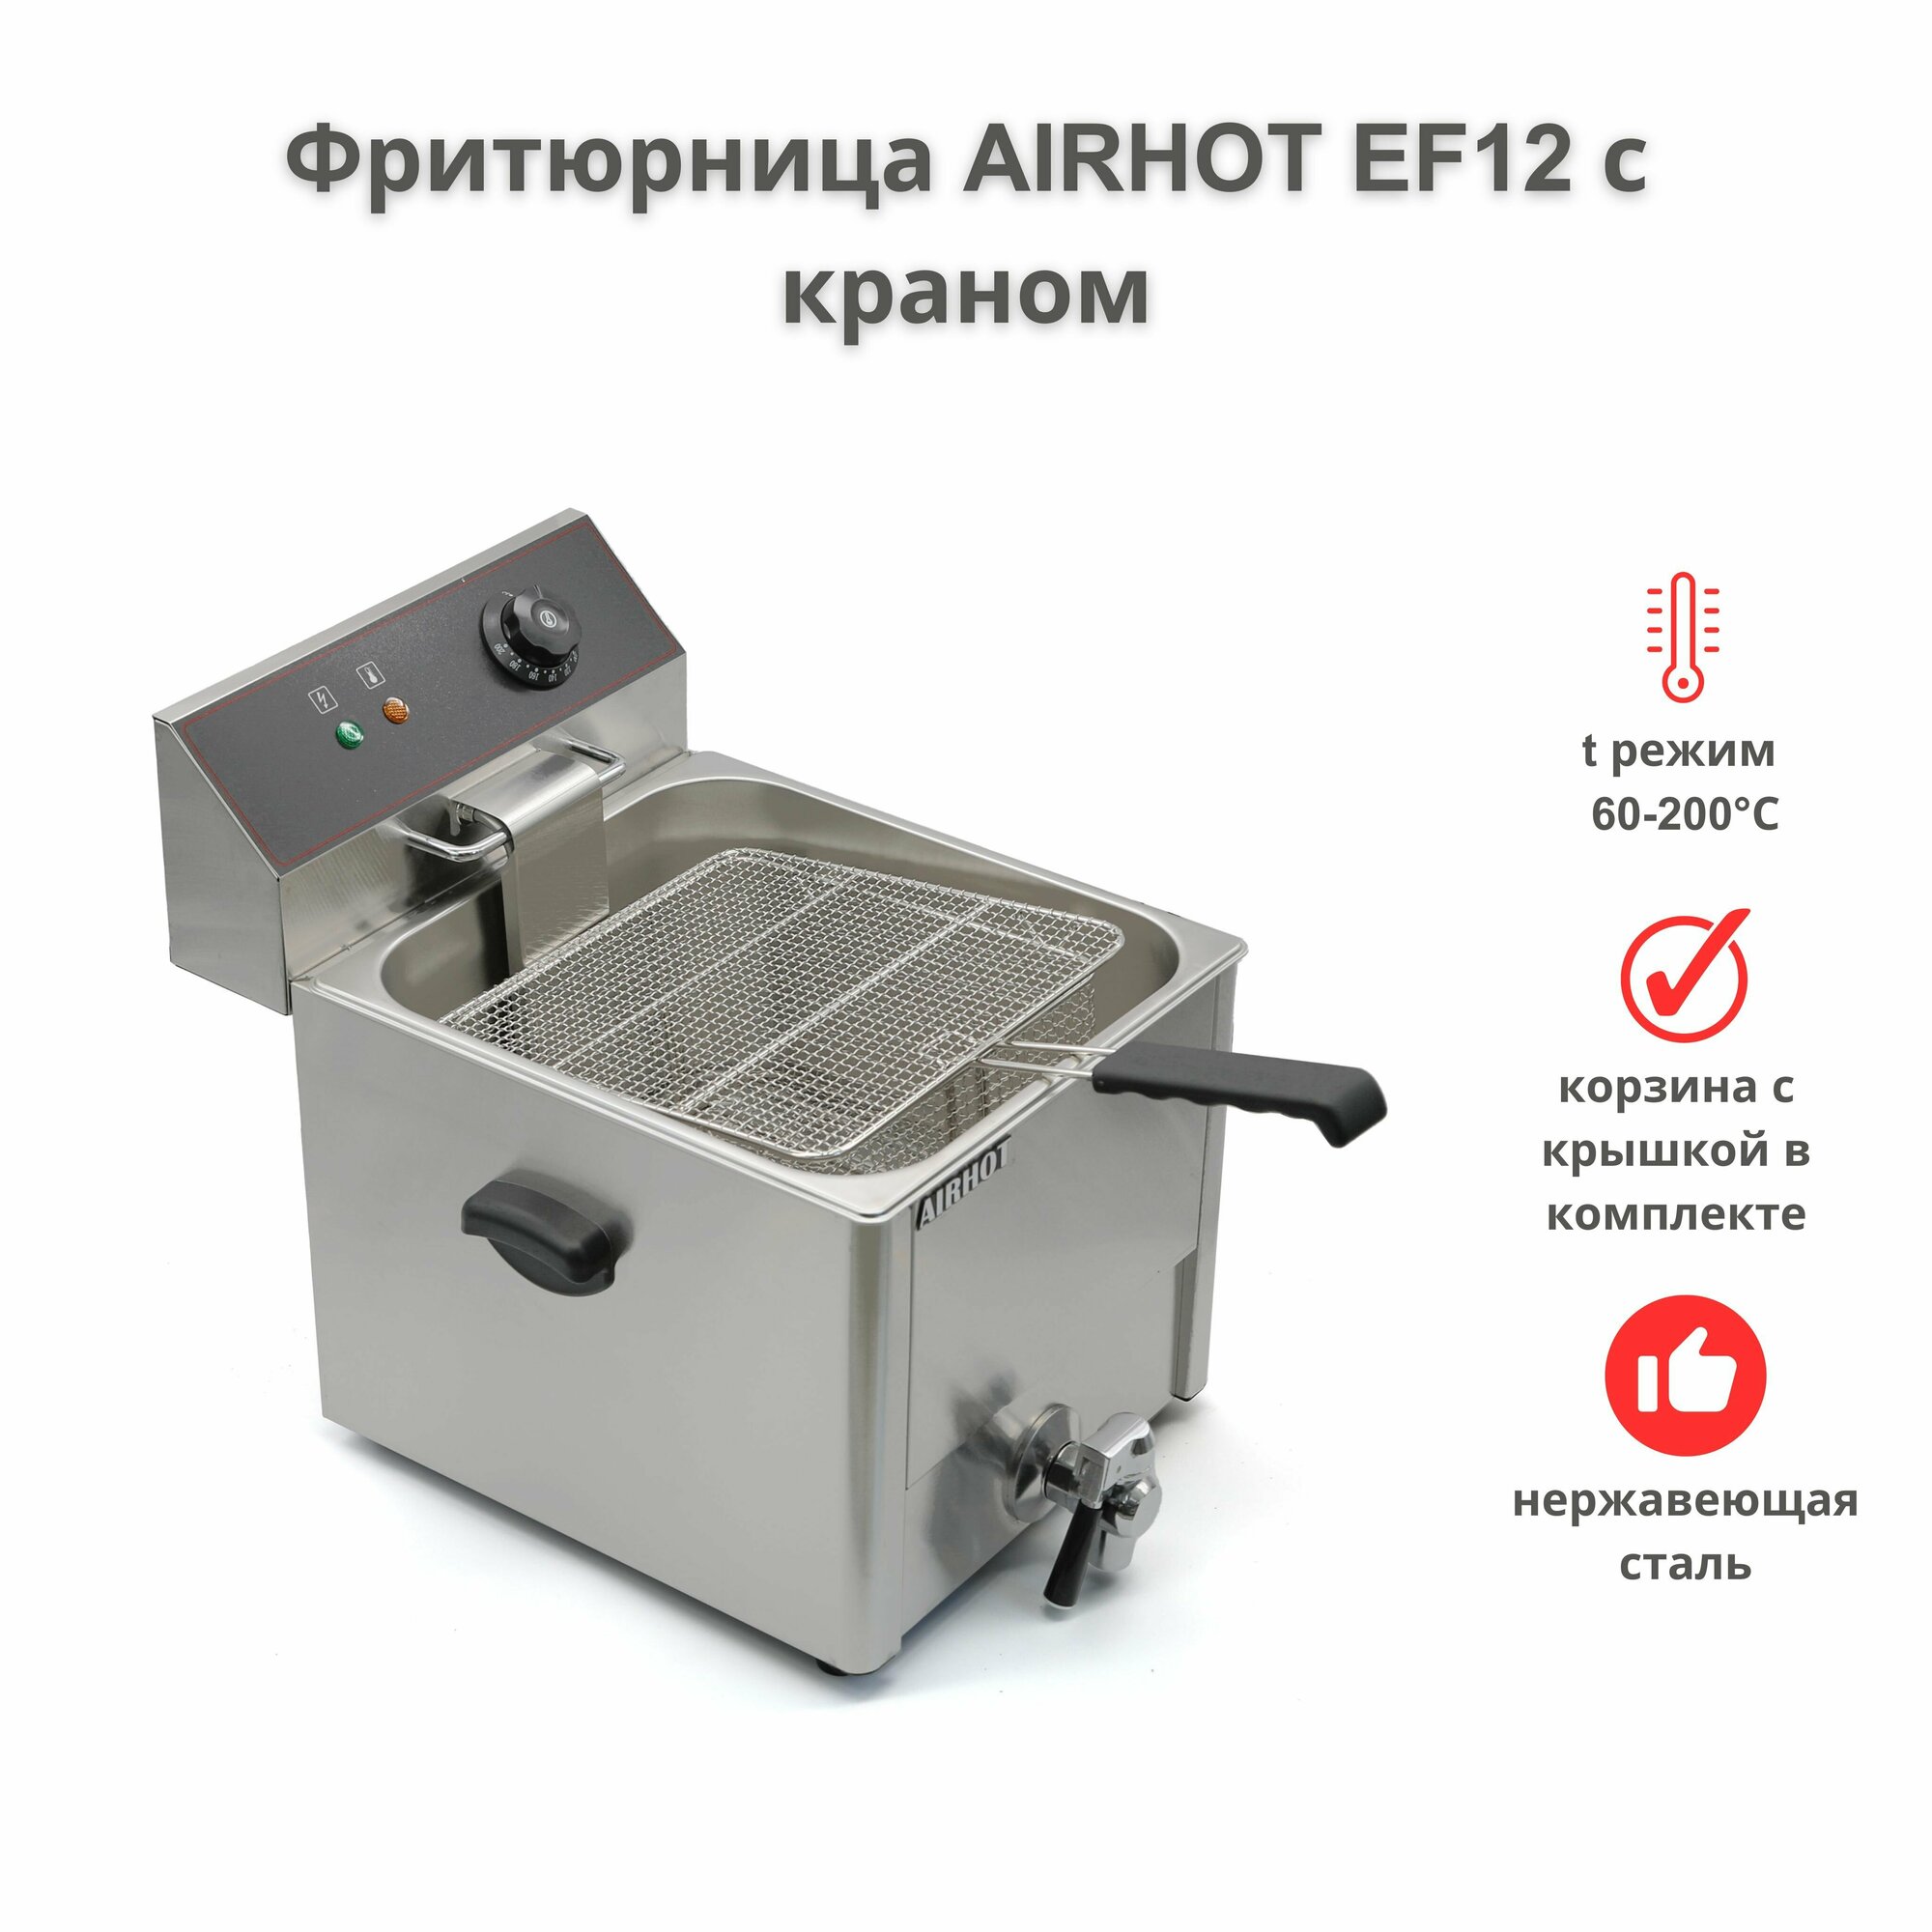 Фритюрница AIRHOT EF12 с краном объем 12л фритюрница профессиональная для кафе ресторана электрофритюрница 325кВт